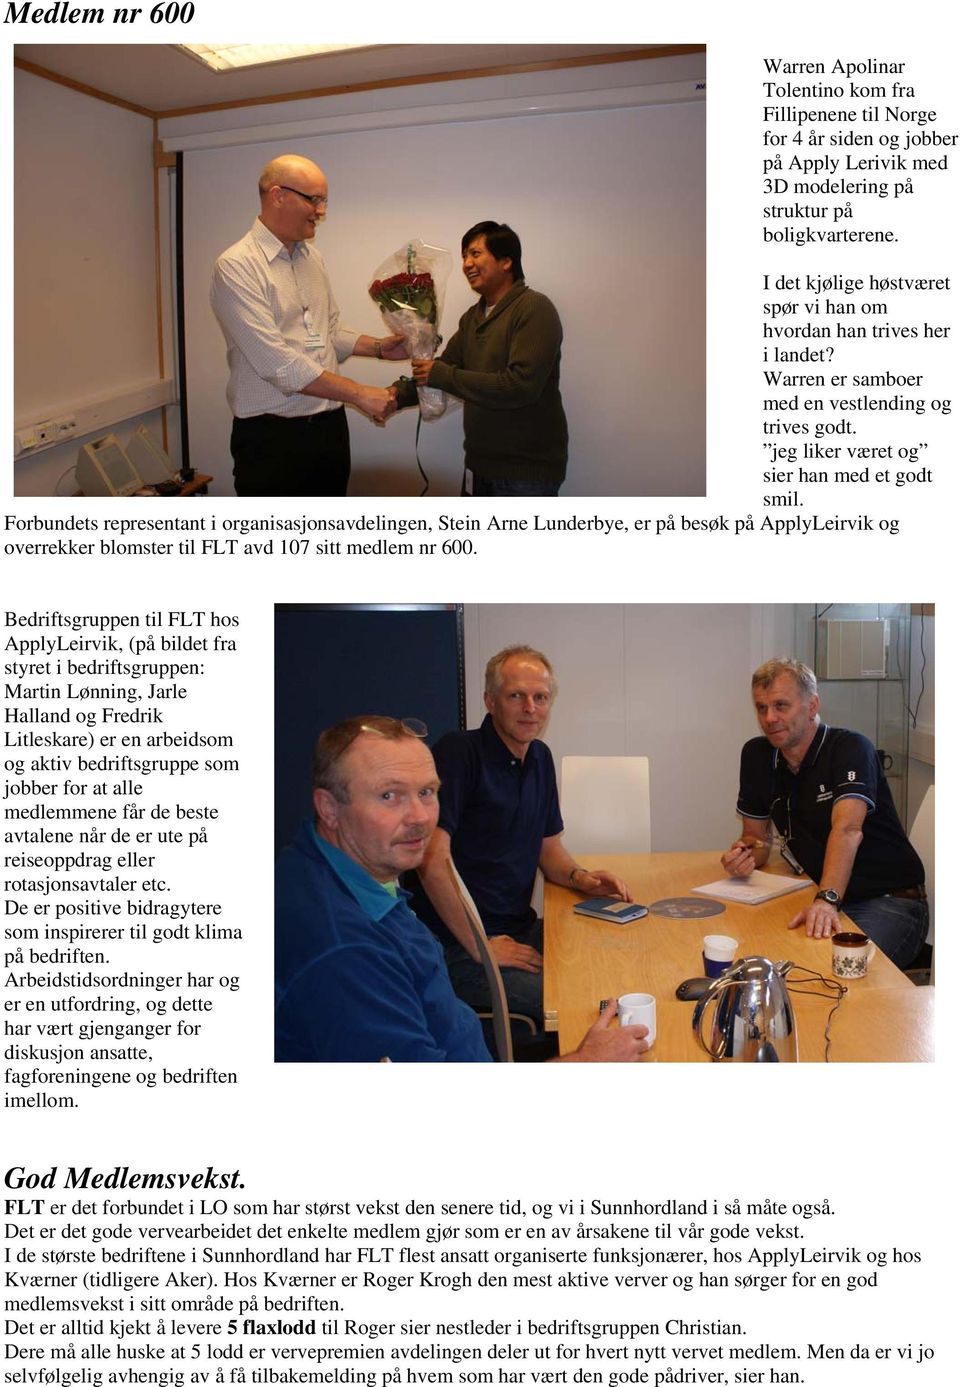 Forbundets representant i organisasjonsavdelingen, Stein Arne Lunderbye, er på besøk på ApplyLeirvik og overrekker blomster til FLT avd 107 sitt medlem nr 600.